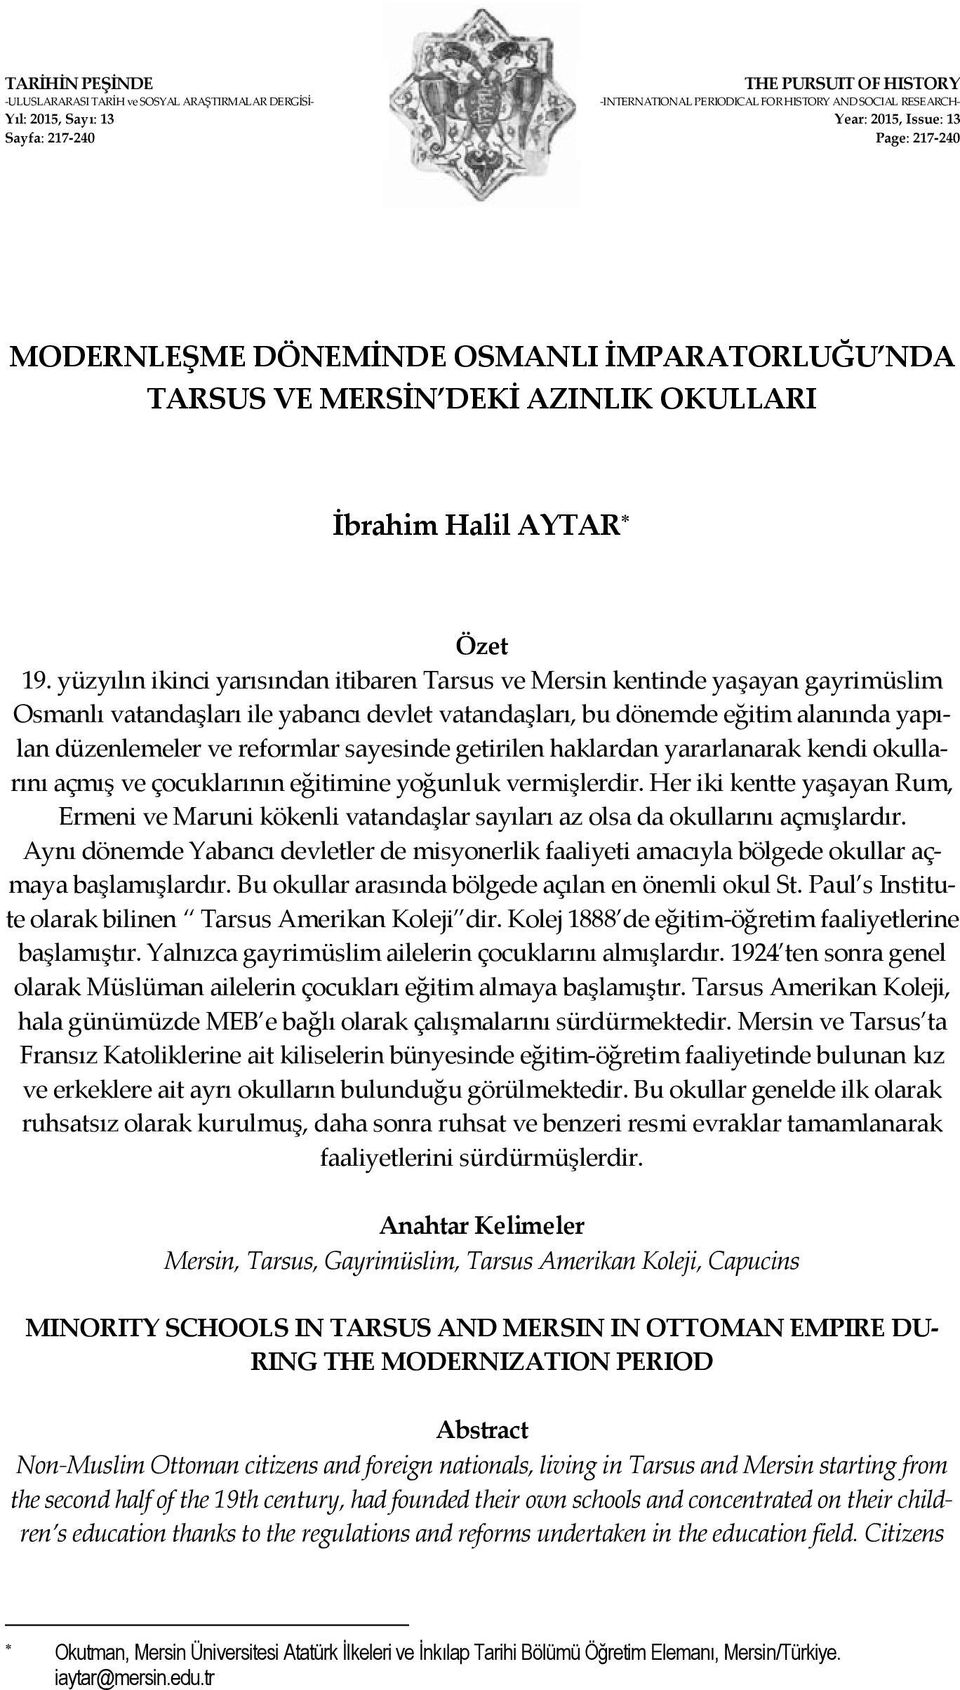 yüzyılın ikinci yarısından itibaren Tarsus ve Mersin kentinde yaşayan gayrimüslim Osmanlı vatandaşları ile yabancı devlet vatandaşları, bu dönemde eğitim alanında yapılan düzenlemeler ve reformlar